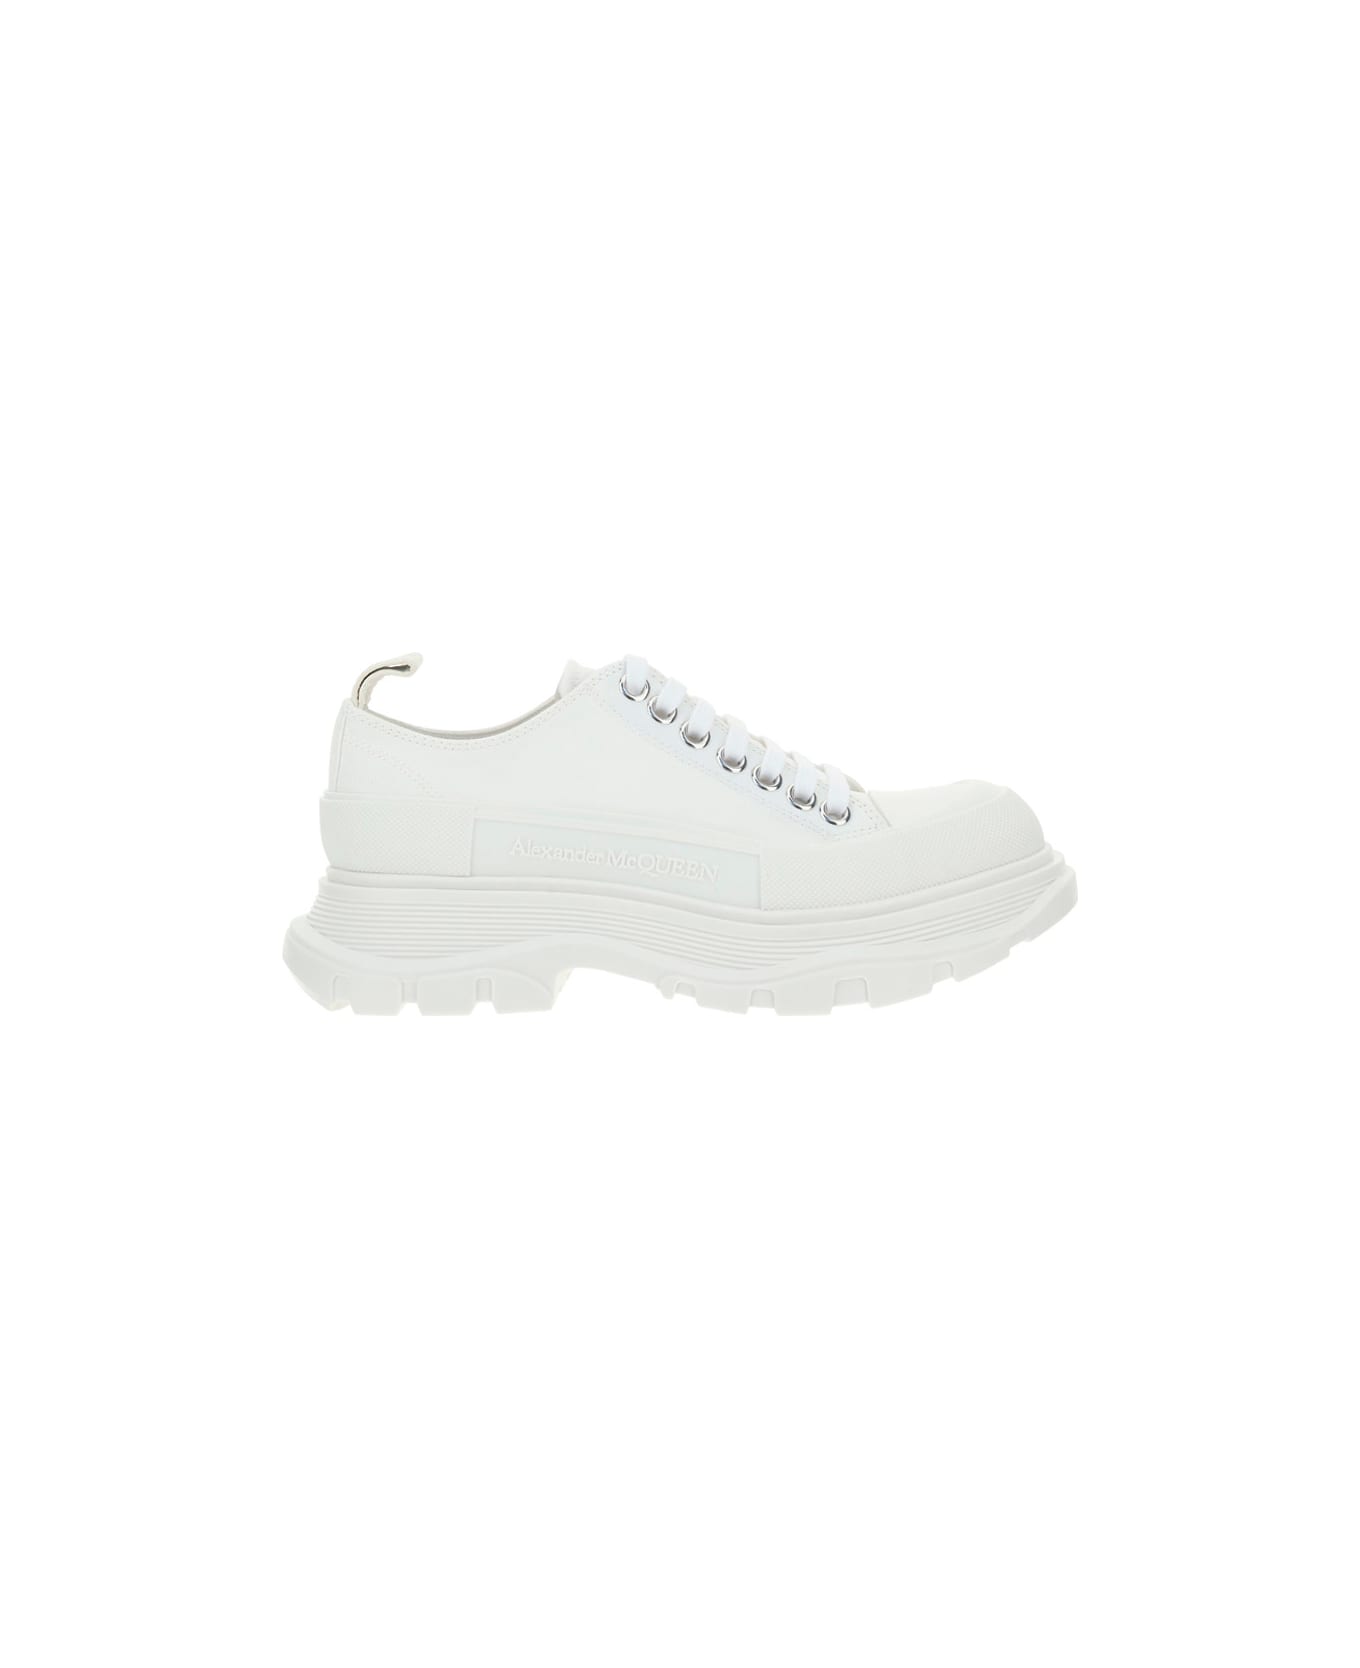 Alexander McQueen Tread Slick Sneaker - White/white